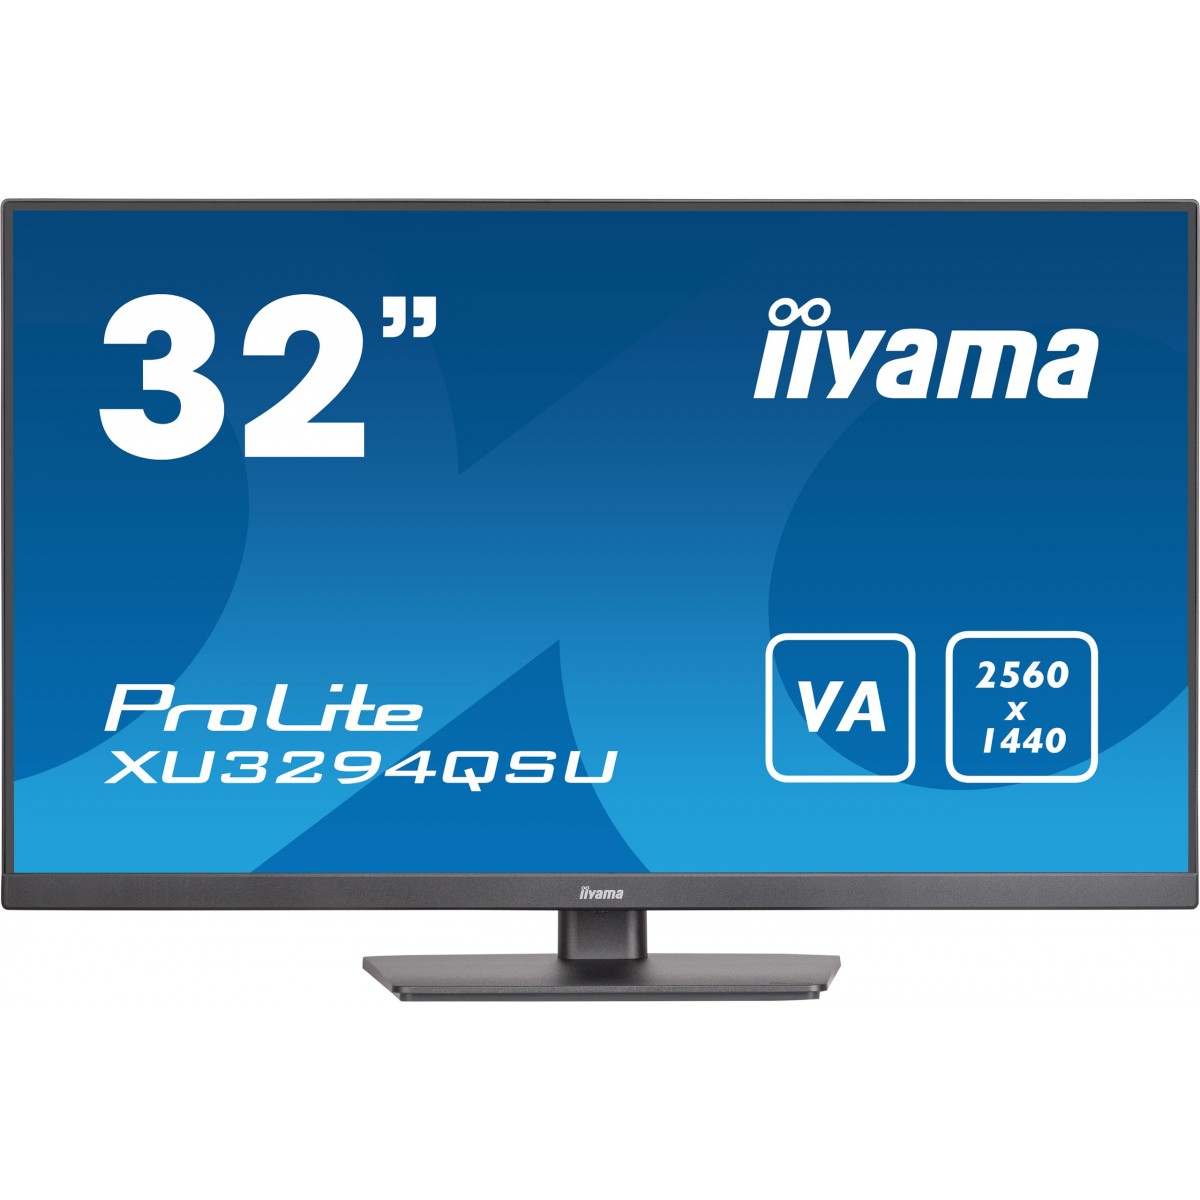 Iiyama 80.0cm 32 XU3294QSU-B1 16 9 HDMI+DP+2xUSB VA bl retail - Flat Screen - 80 cm